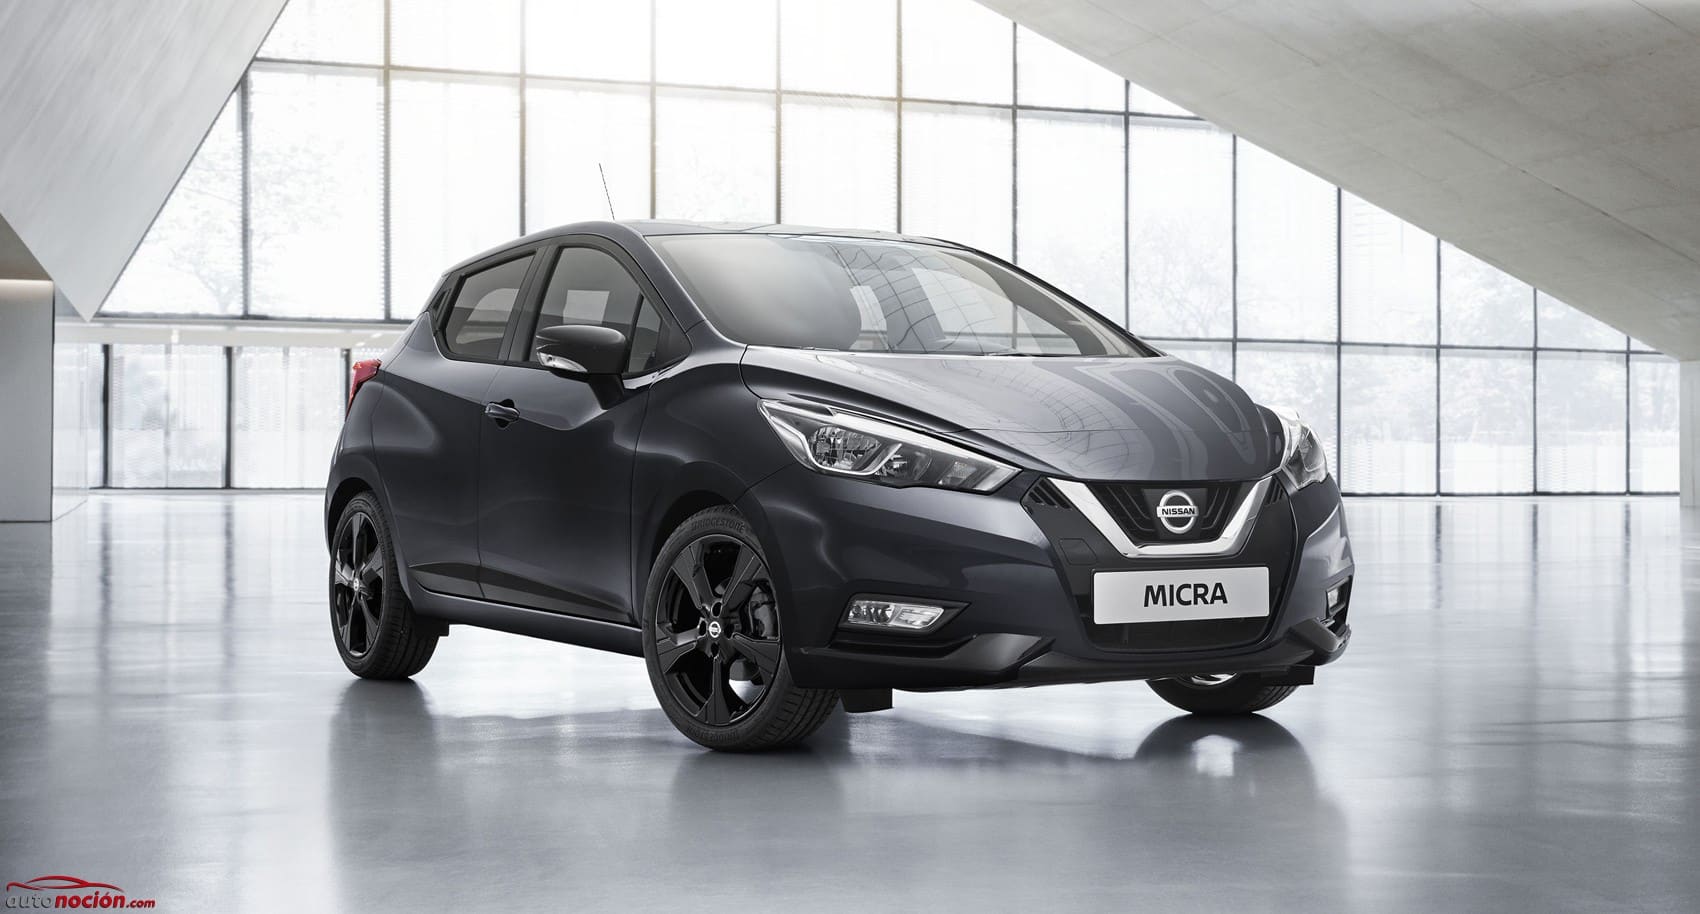 Precios del Nissan Micra nuevo en oferta para todos sus motores y acabados